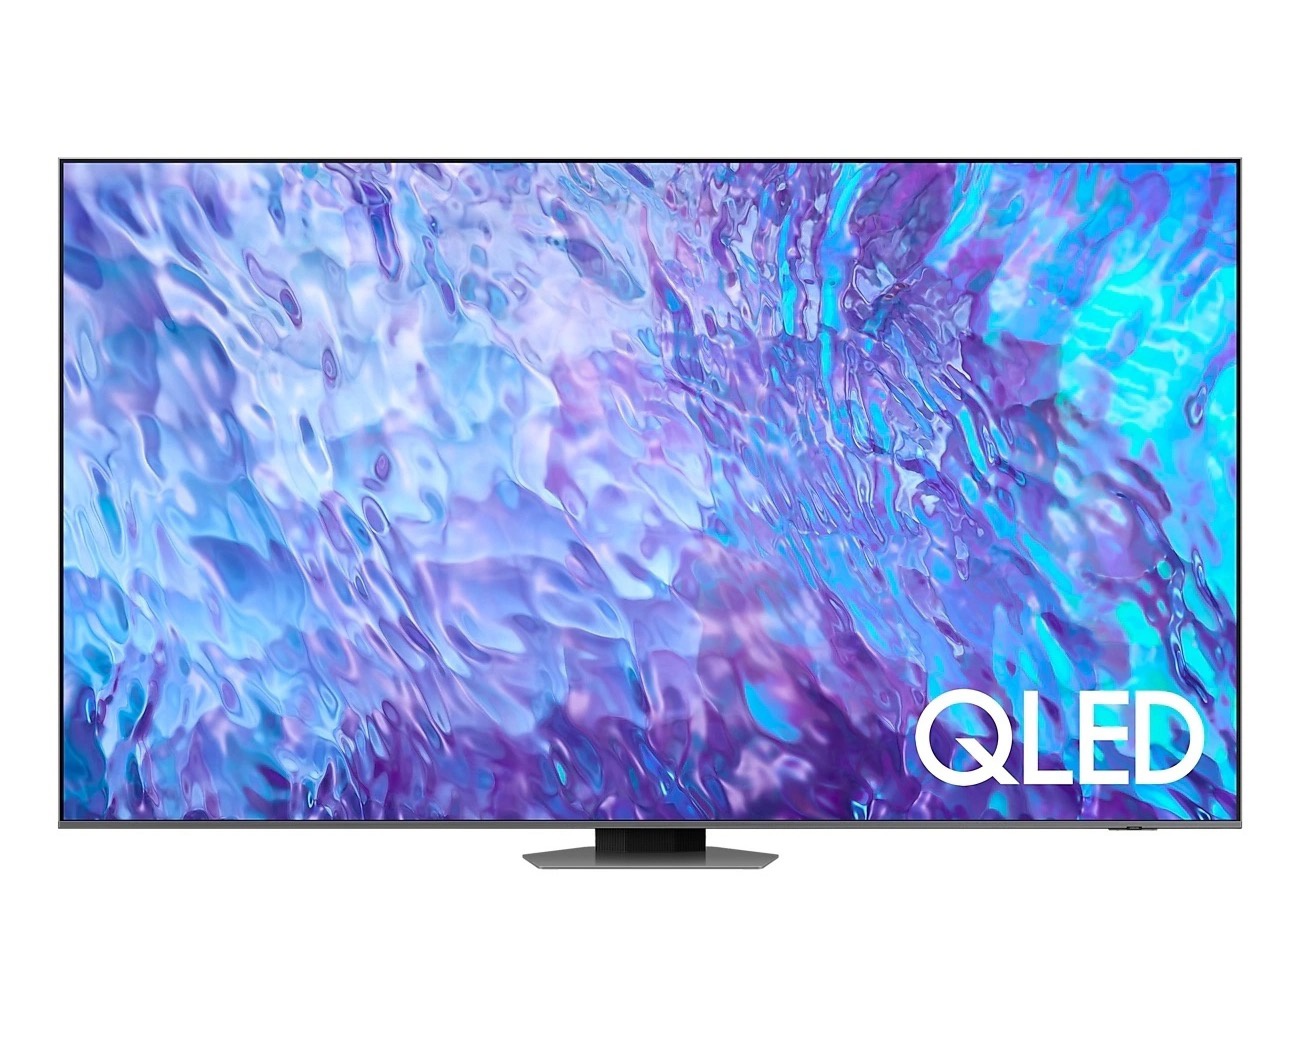 三星 98 英寸新品巨幕电视 Q80Z 正式上市，售价 39999